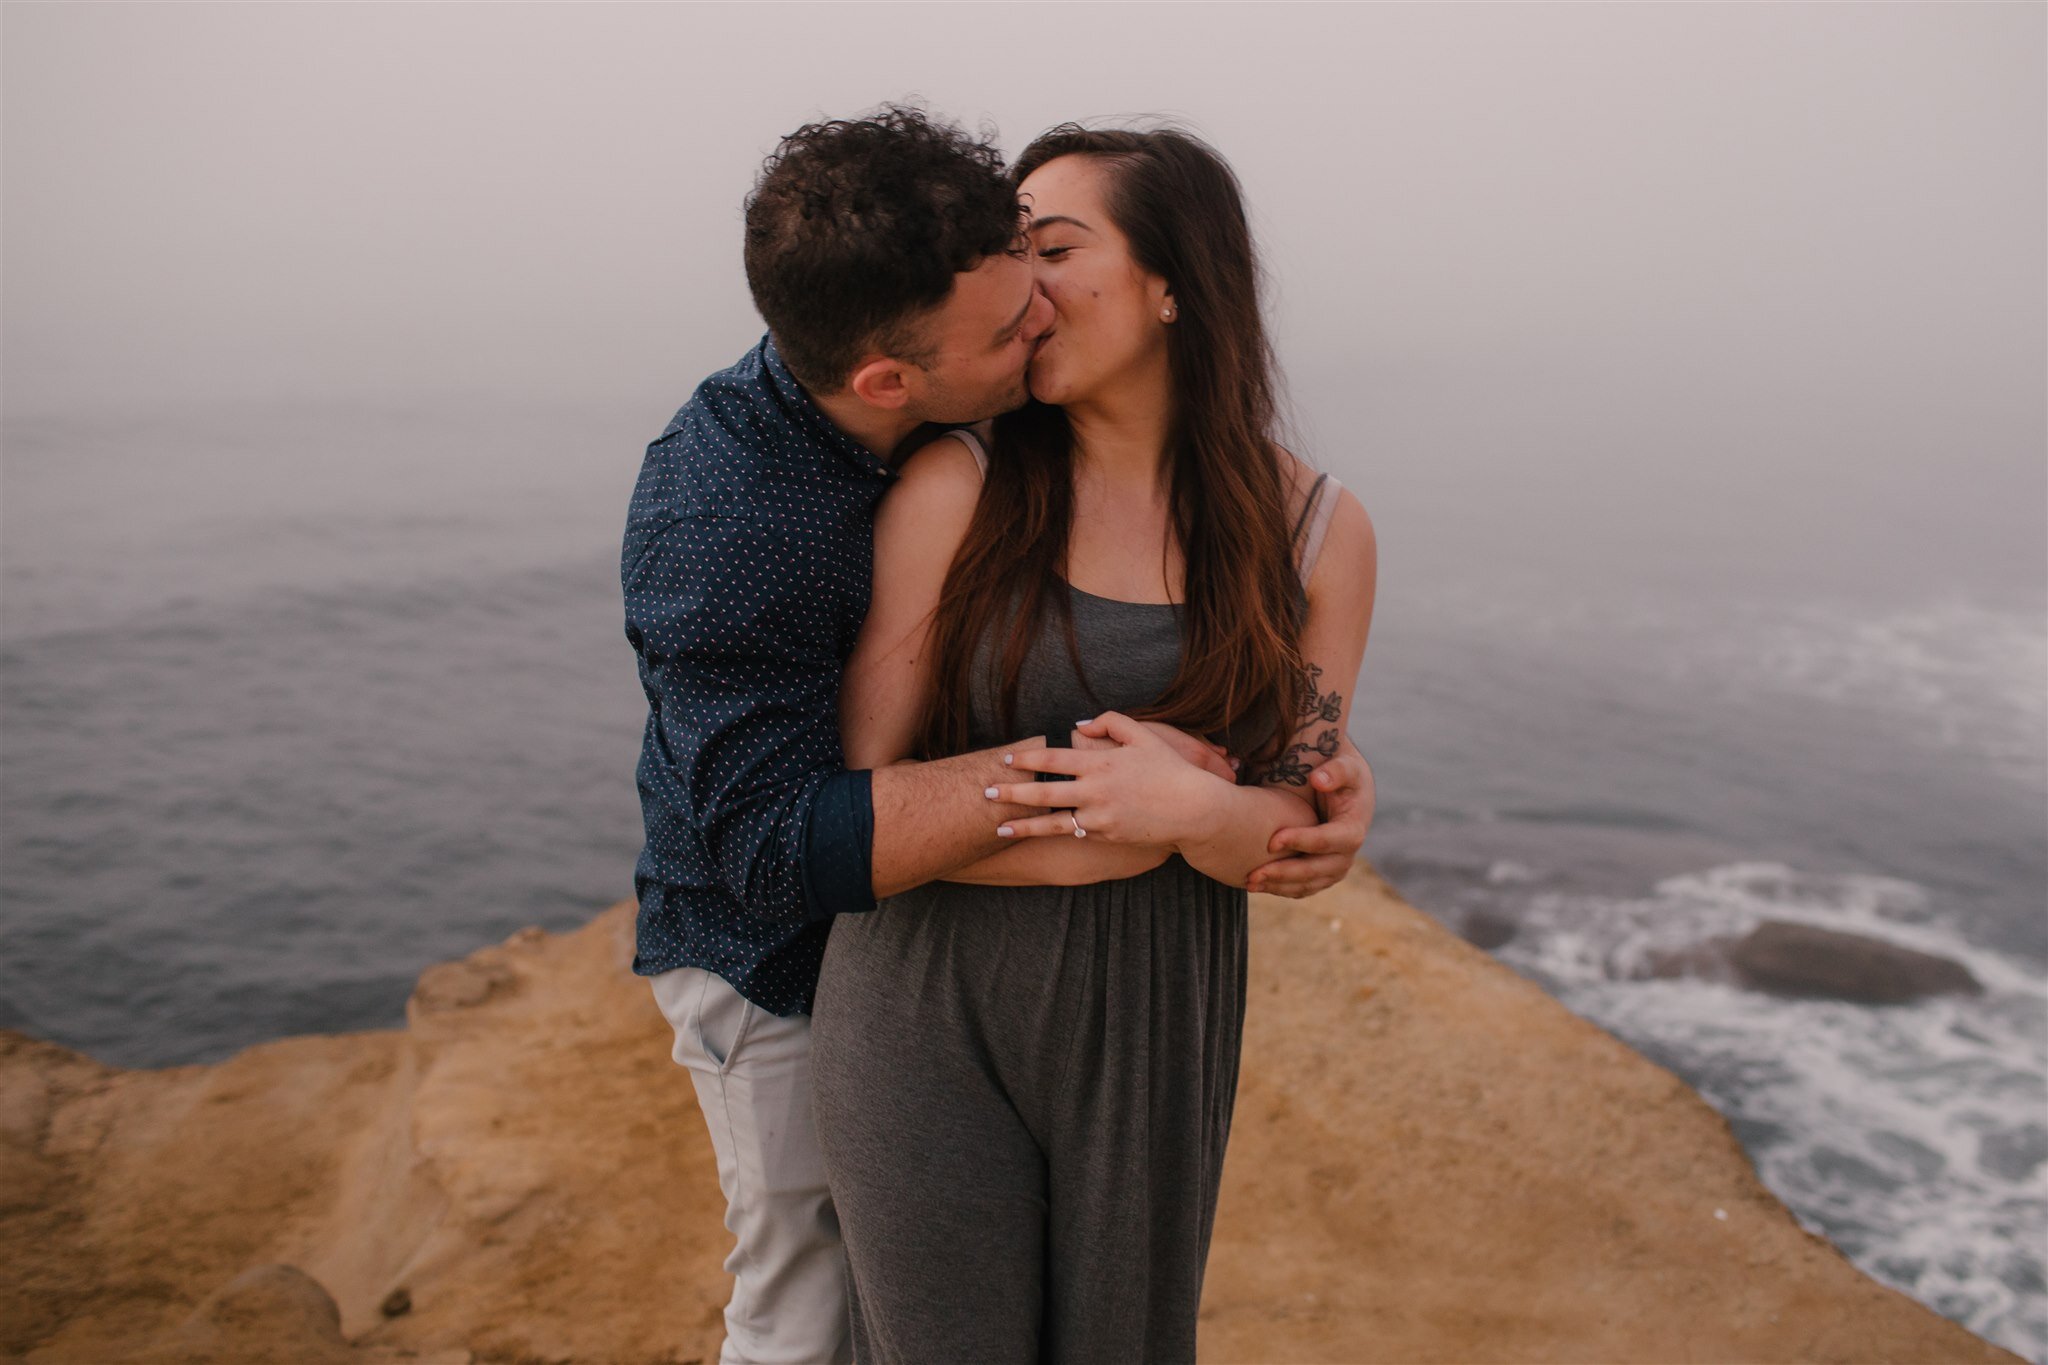 sunset-cliffs-san-diego-surprise-proposal-engagement-socal-southern-california-wedding-elopement-photographer-beach-ocean-16.jpg